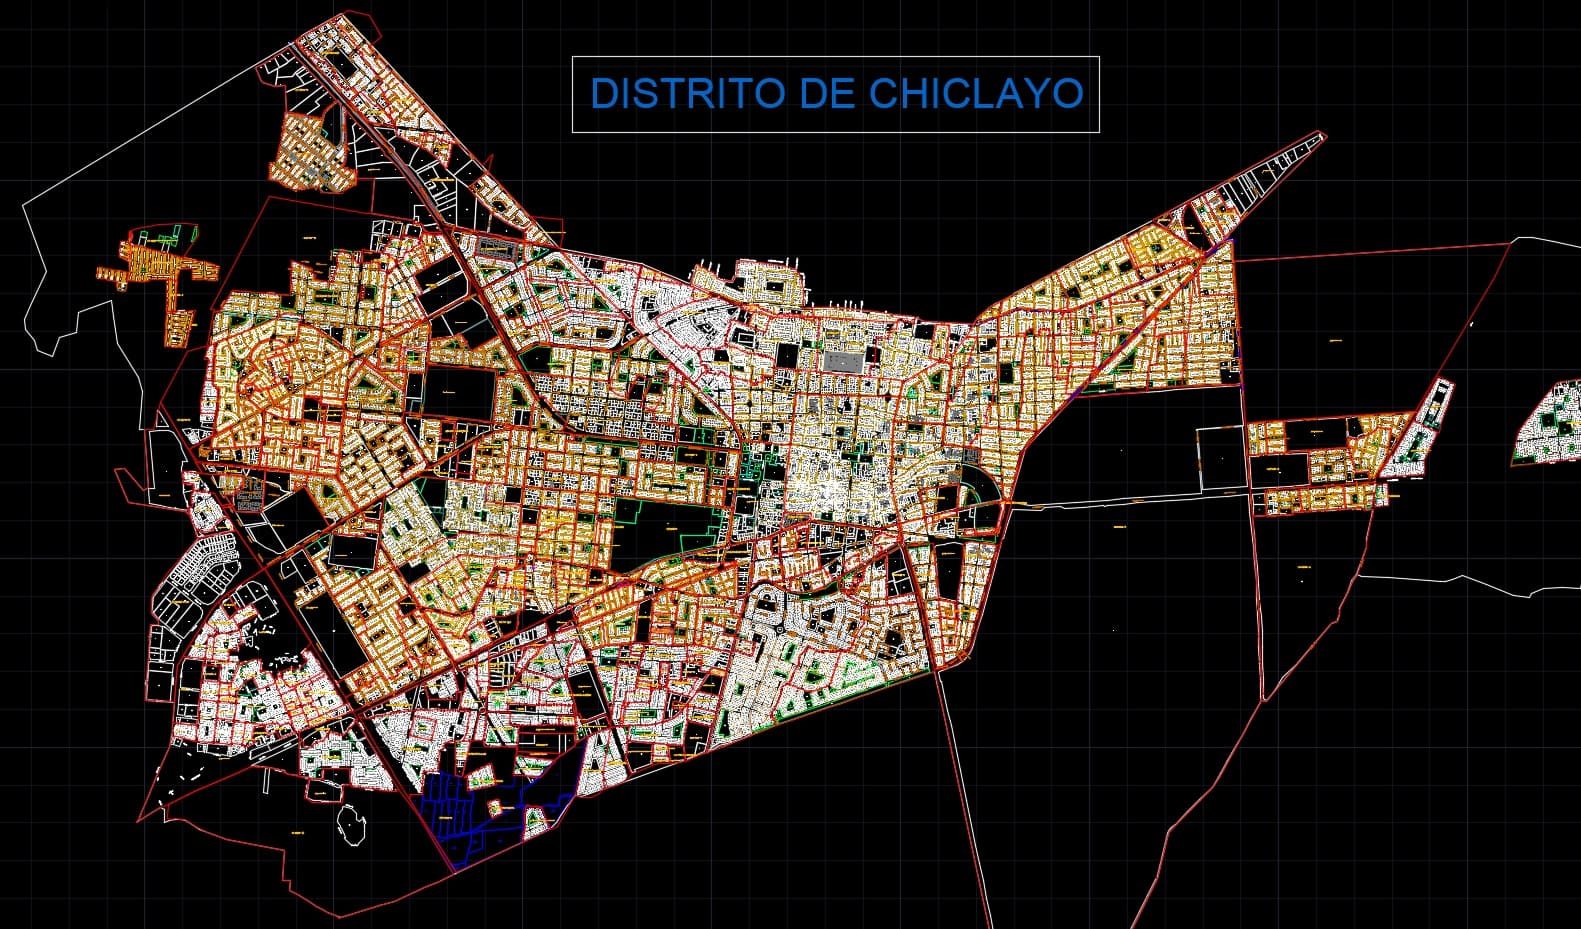 Habilitacion urbana de la ciudad de Chiclayo